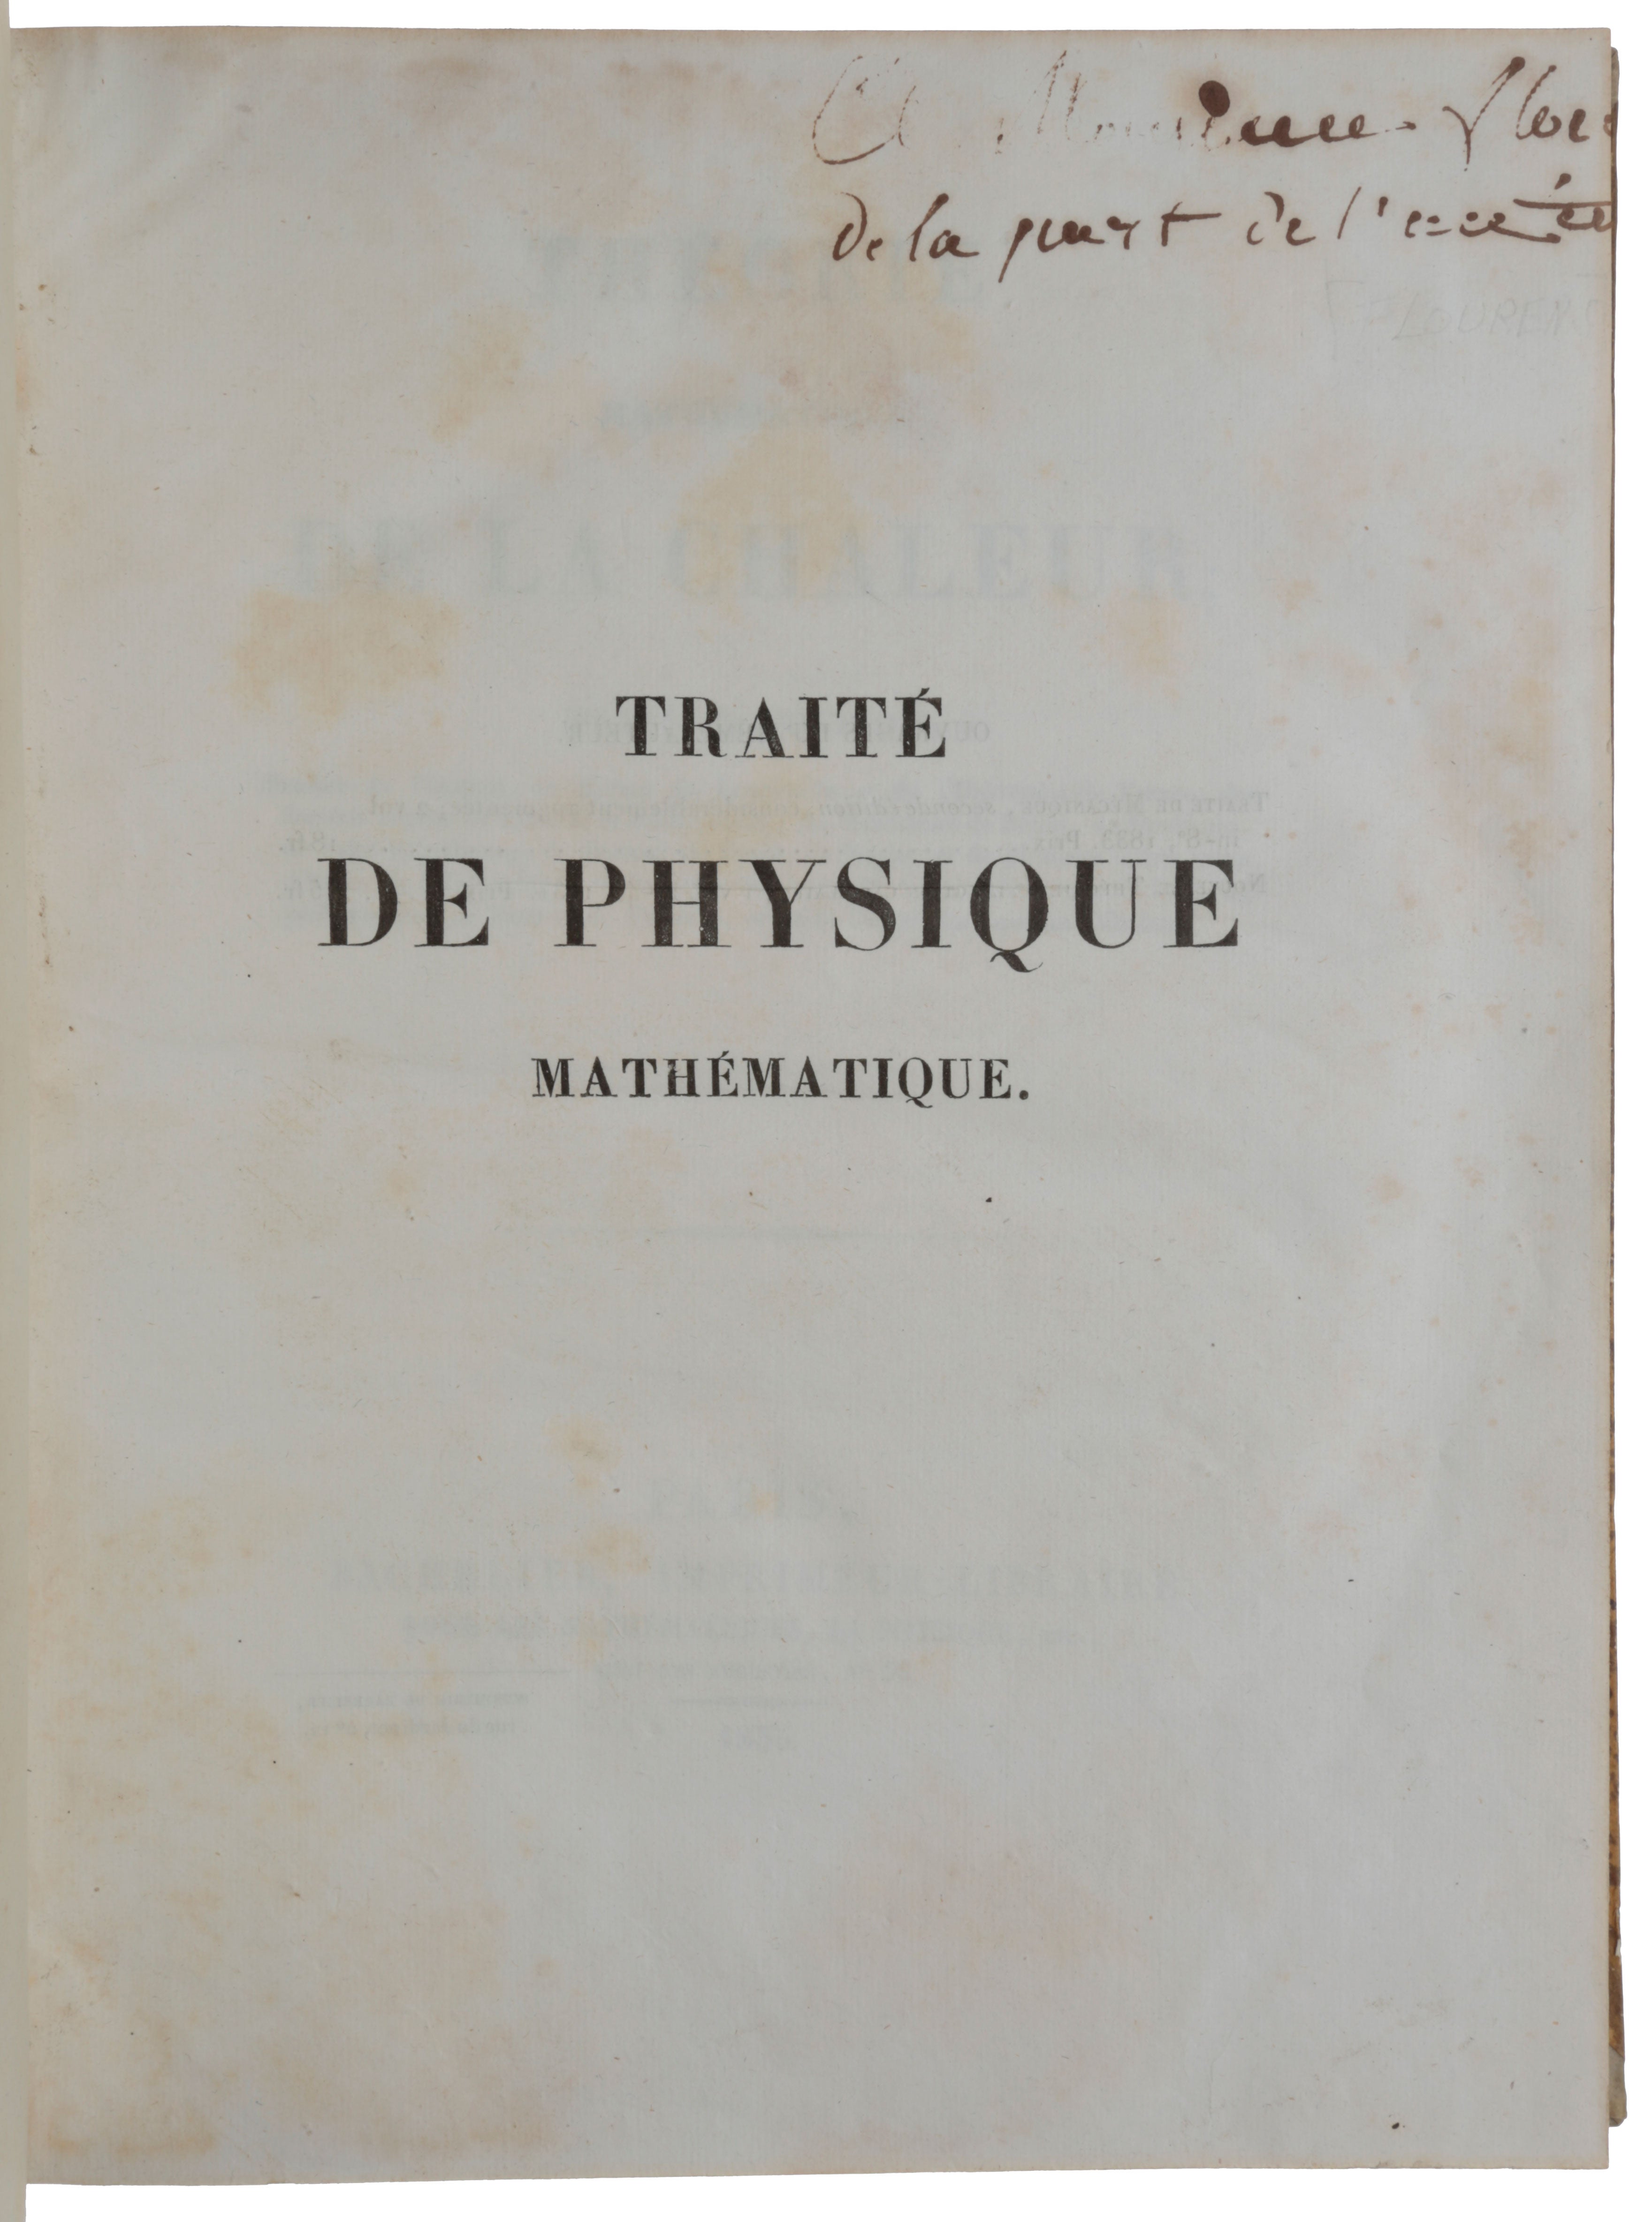 Item #5242 Théorie mathématique de la chaleur. Siméon-Denis POISSON.